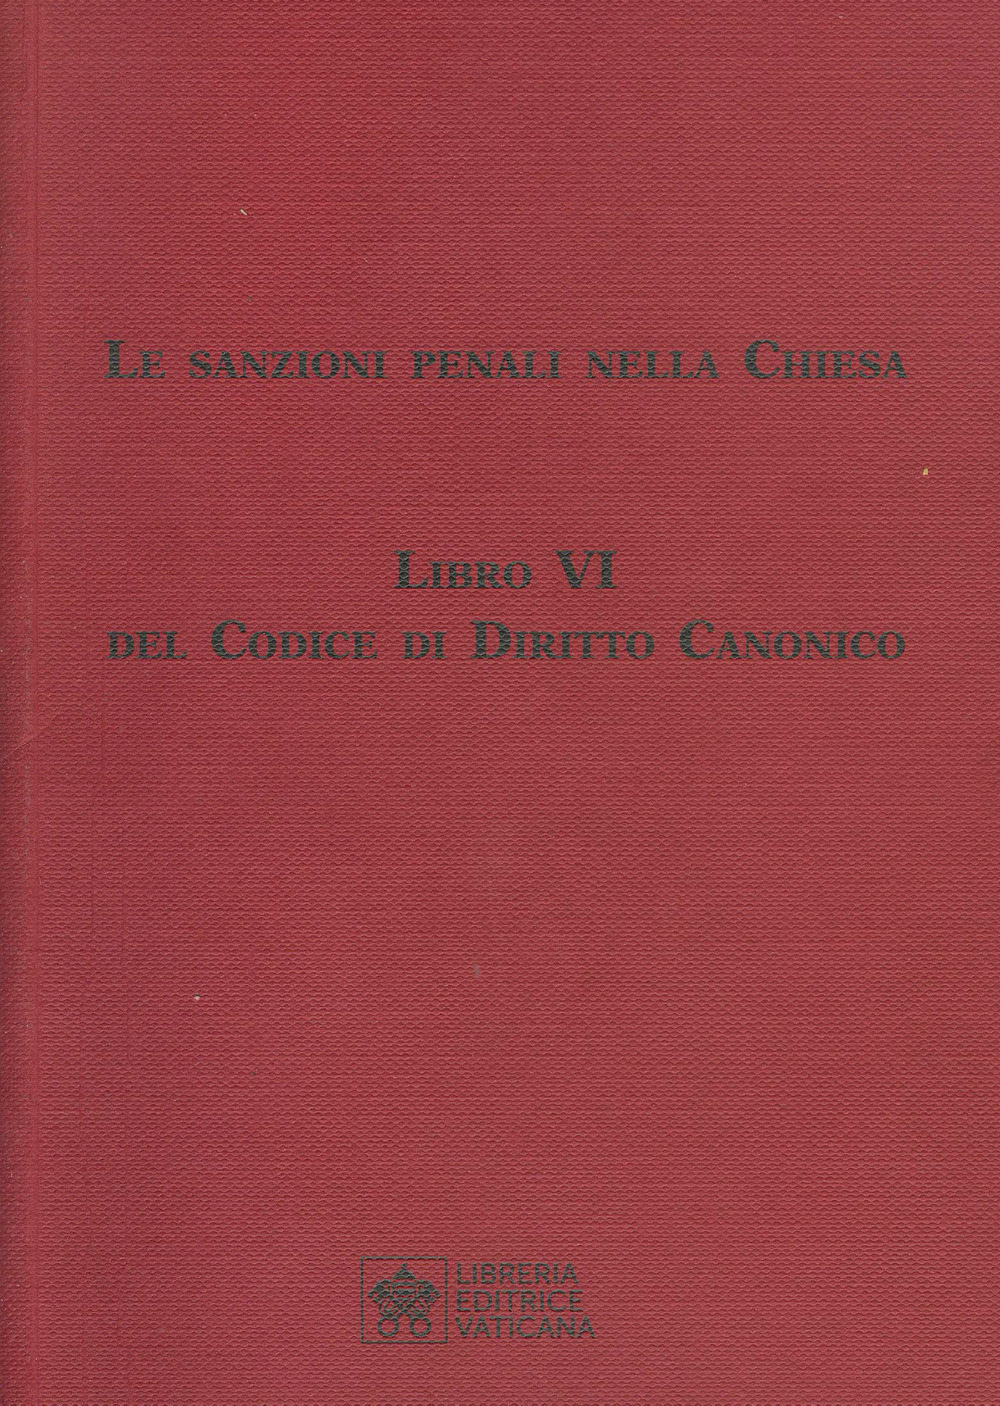 Le sanzioni penali nella Chiesa. Libro VI del Codice di Diritto Canonico